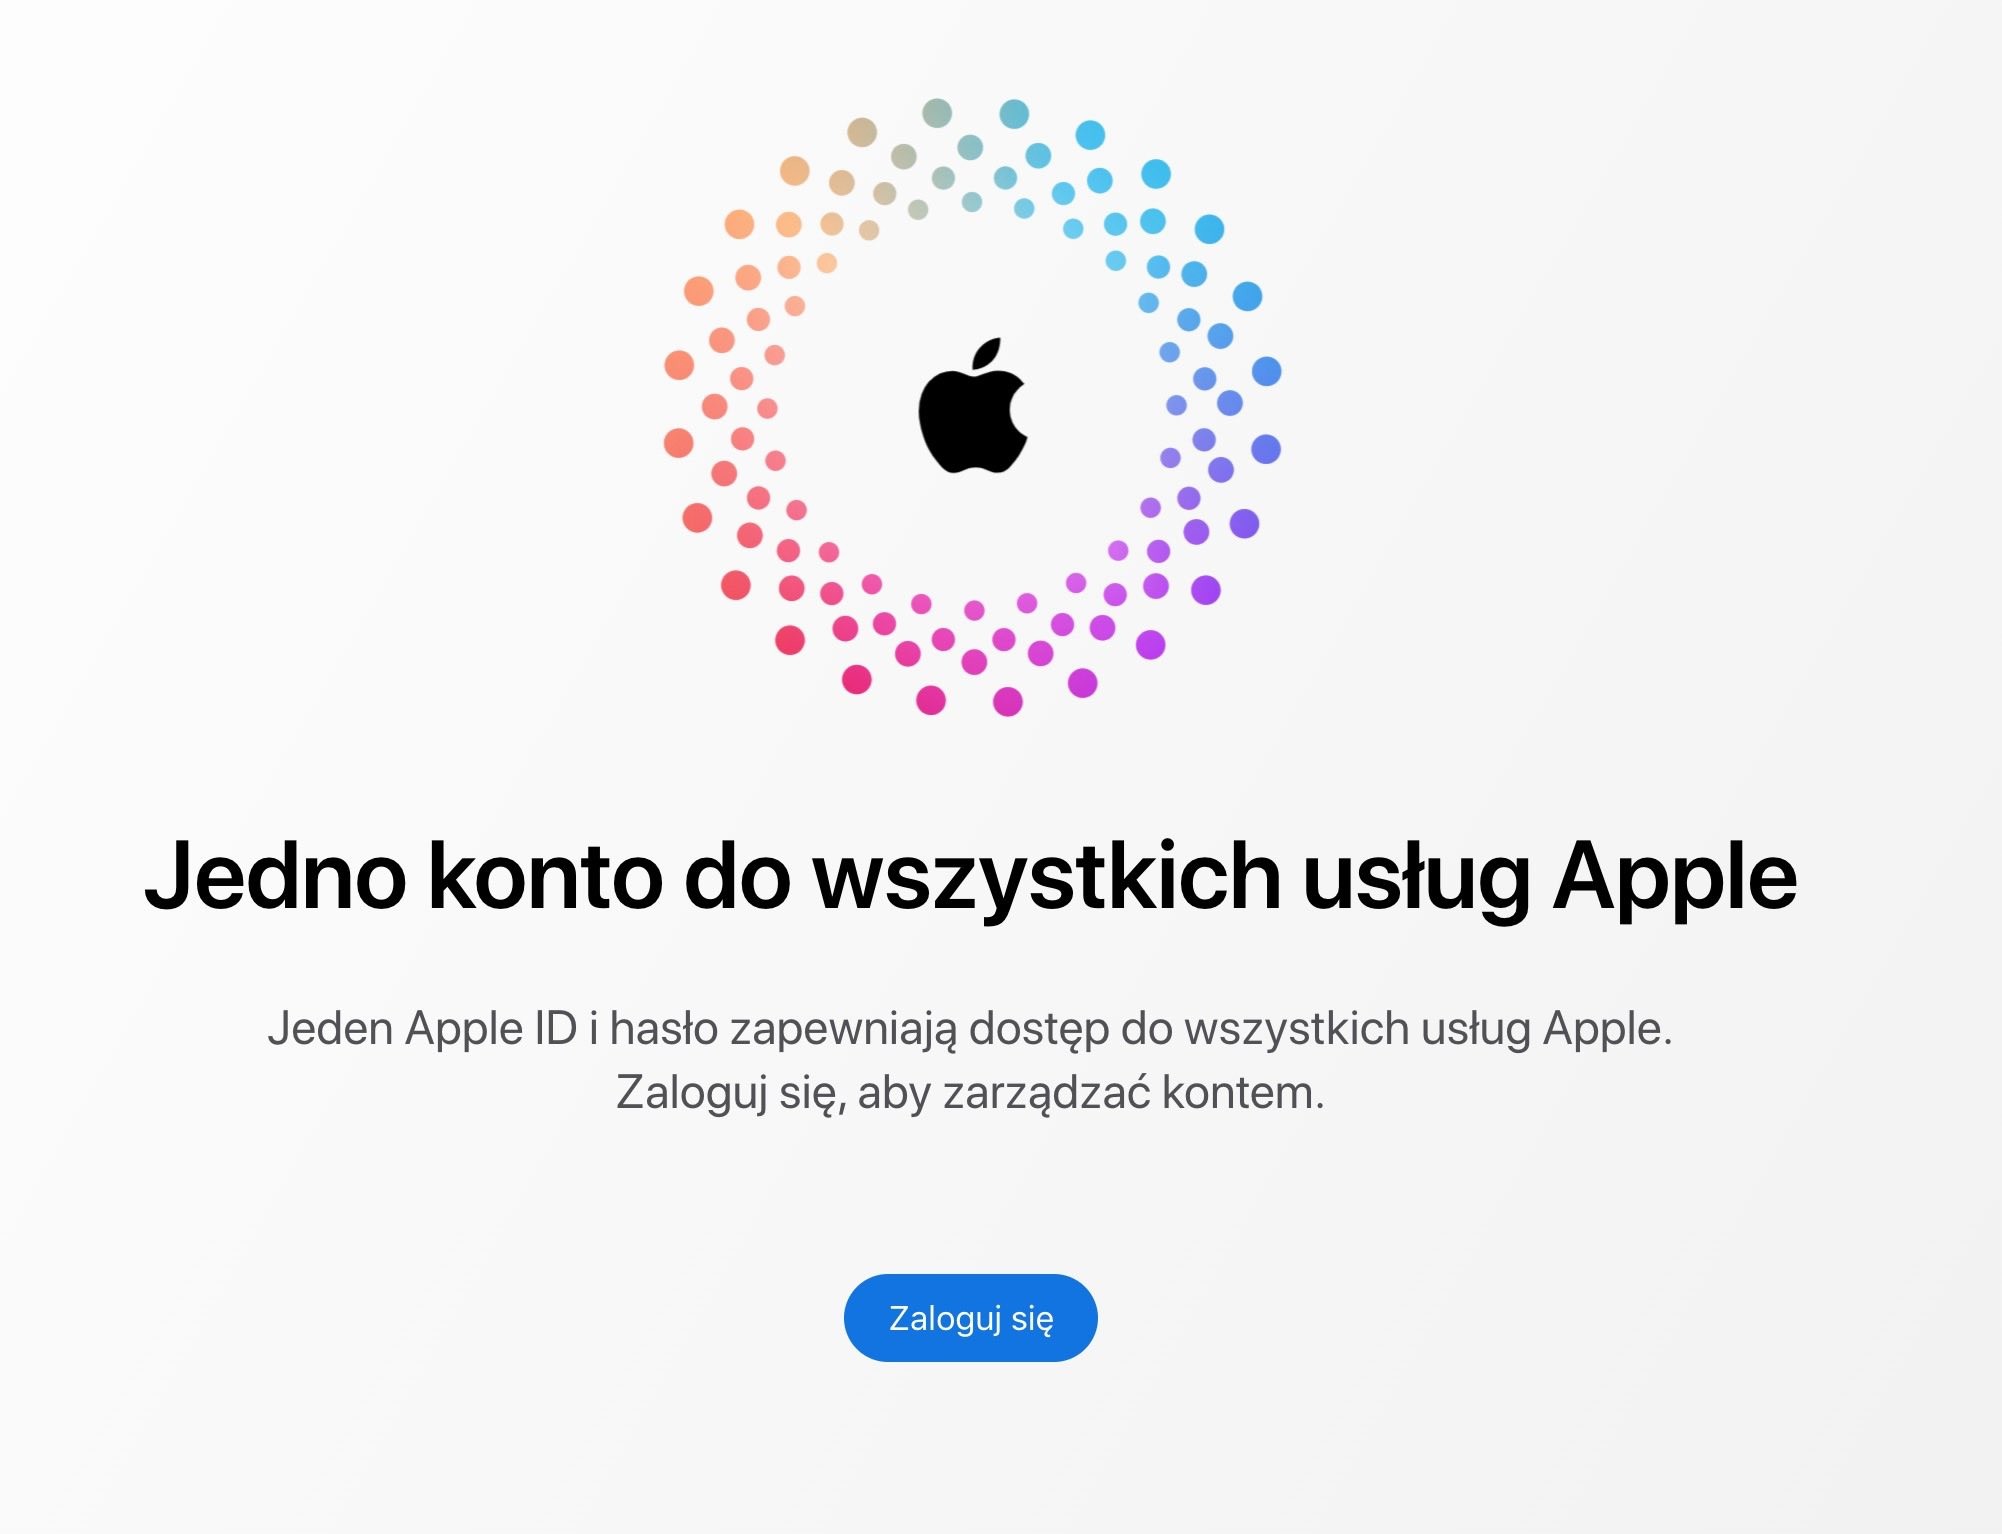 Apple zmieniło wygląd witryny Apple ID ciekawostki nowy wyglad strony apple id, Apple ID  Apple przeprojektowało wygląd strony Apple ID – stała się ona bardziej nowoczesna i spójna z minimalizmem marki. AppleIS 2